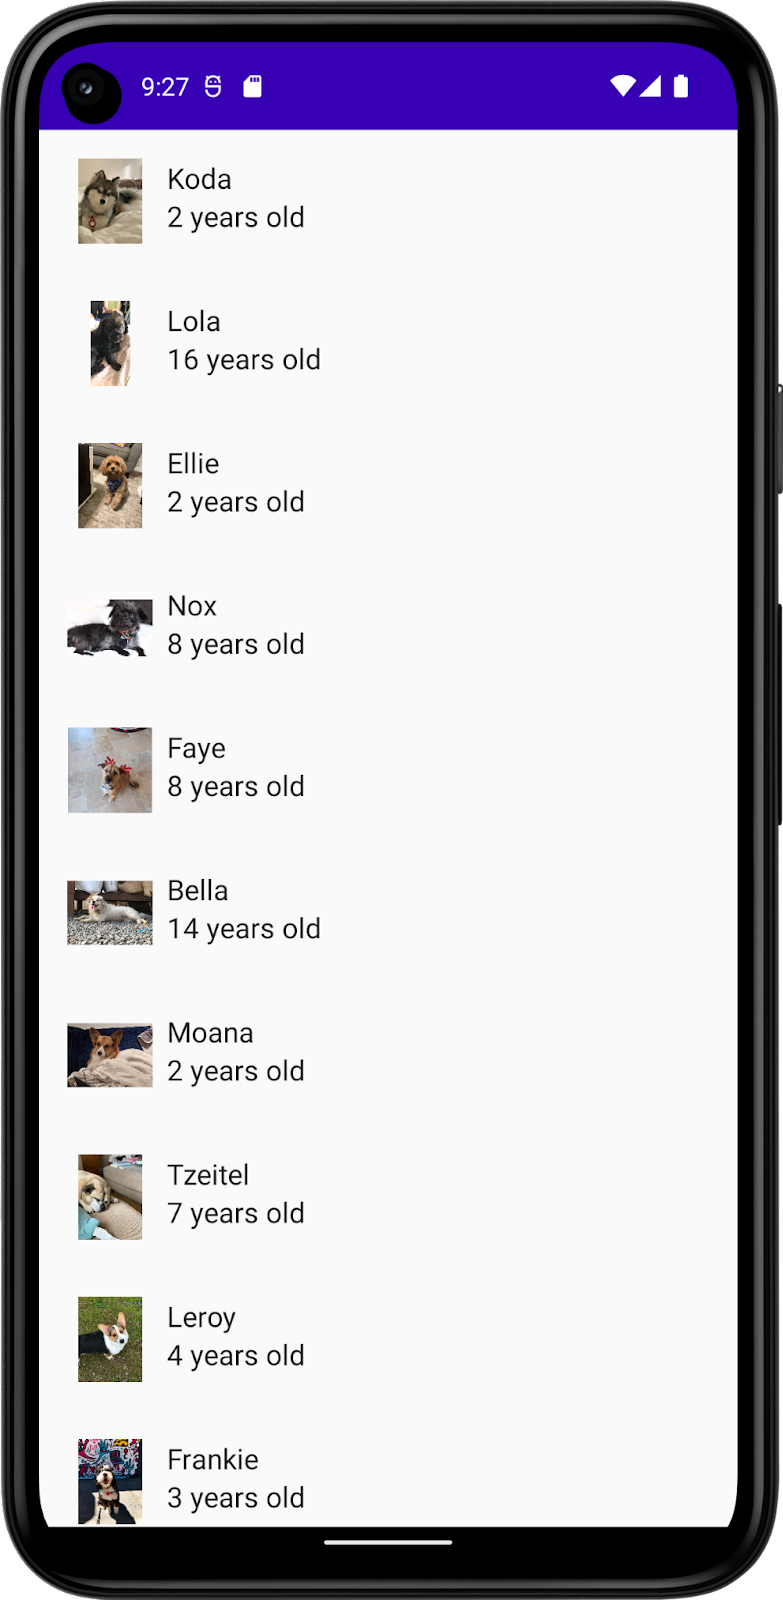 この画像は、犬の名前、写真、年齢を含むリストを表示するアプリを示しています。